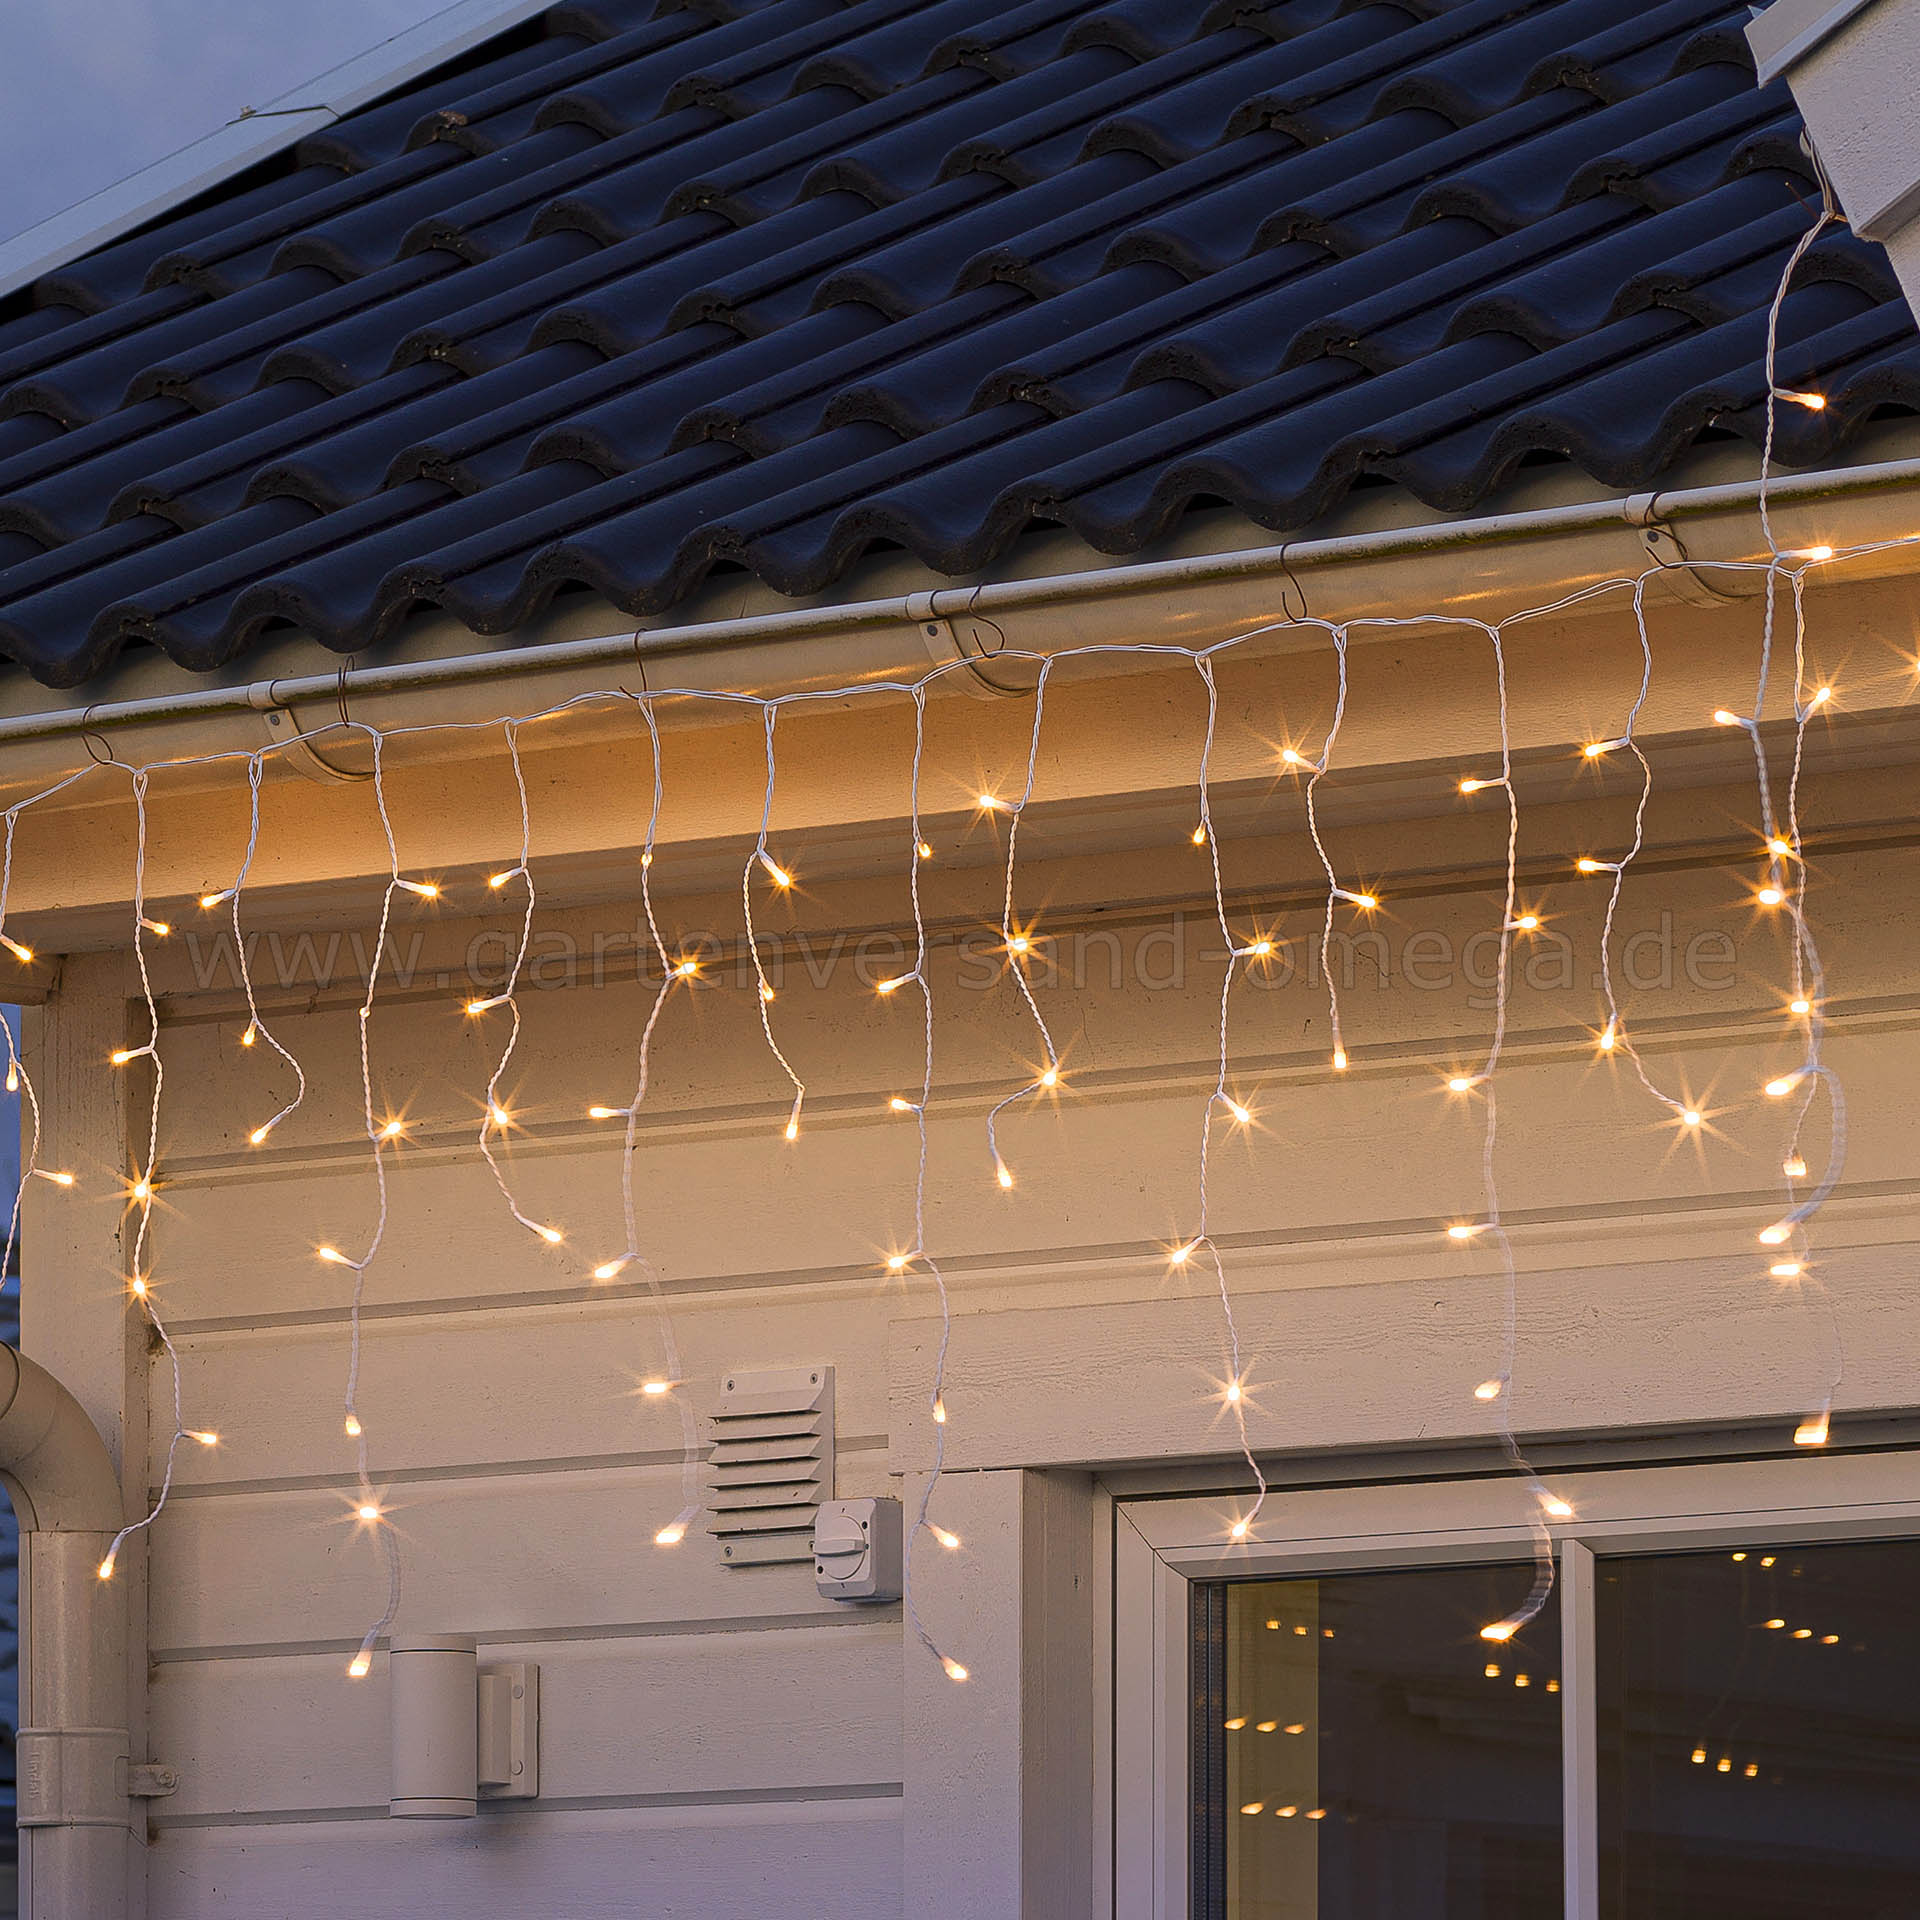 - Eisregenvorhang LED Lichtervorhang Lichteffekt, Glimmereffekt für Dachrinnenlichterkette, Eisregen-Lichterkette, Lichterkette Weihnachtsaußenbeleuchtung warme Dachrinnen, blinkend Lichtfarbe, gefrostet LED-Lichtvorhang Lichterkettenvorhang,